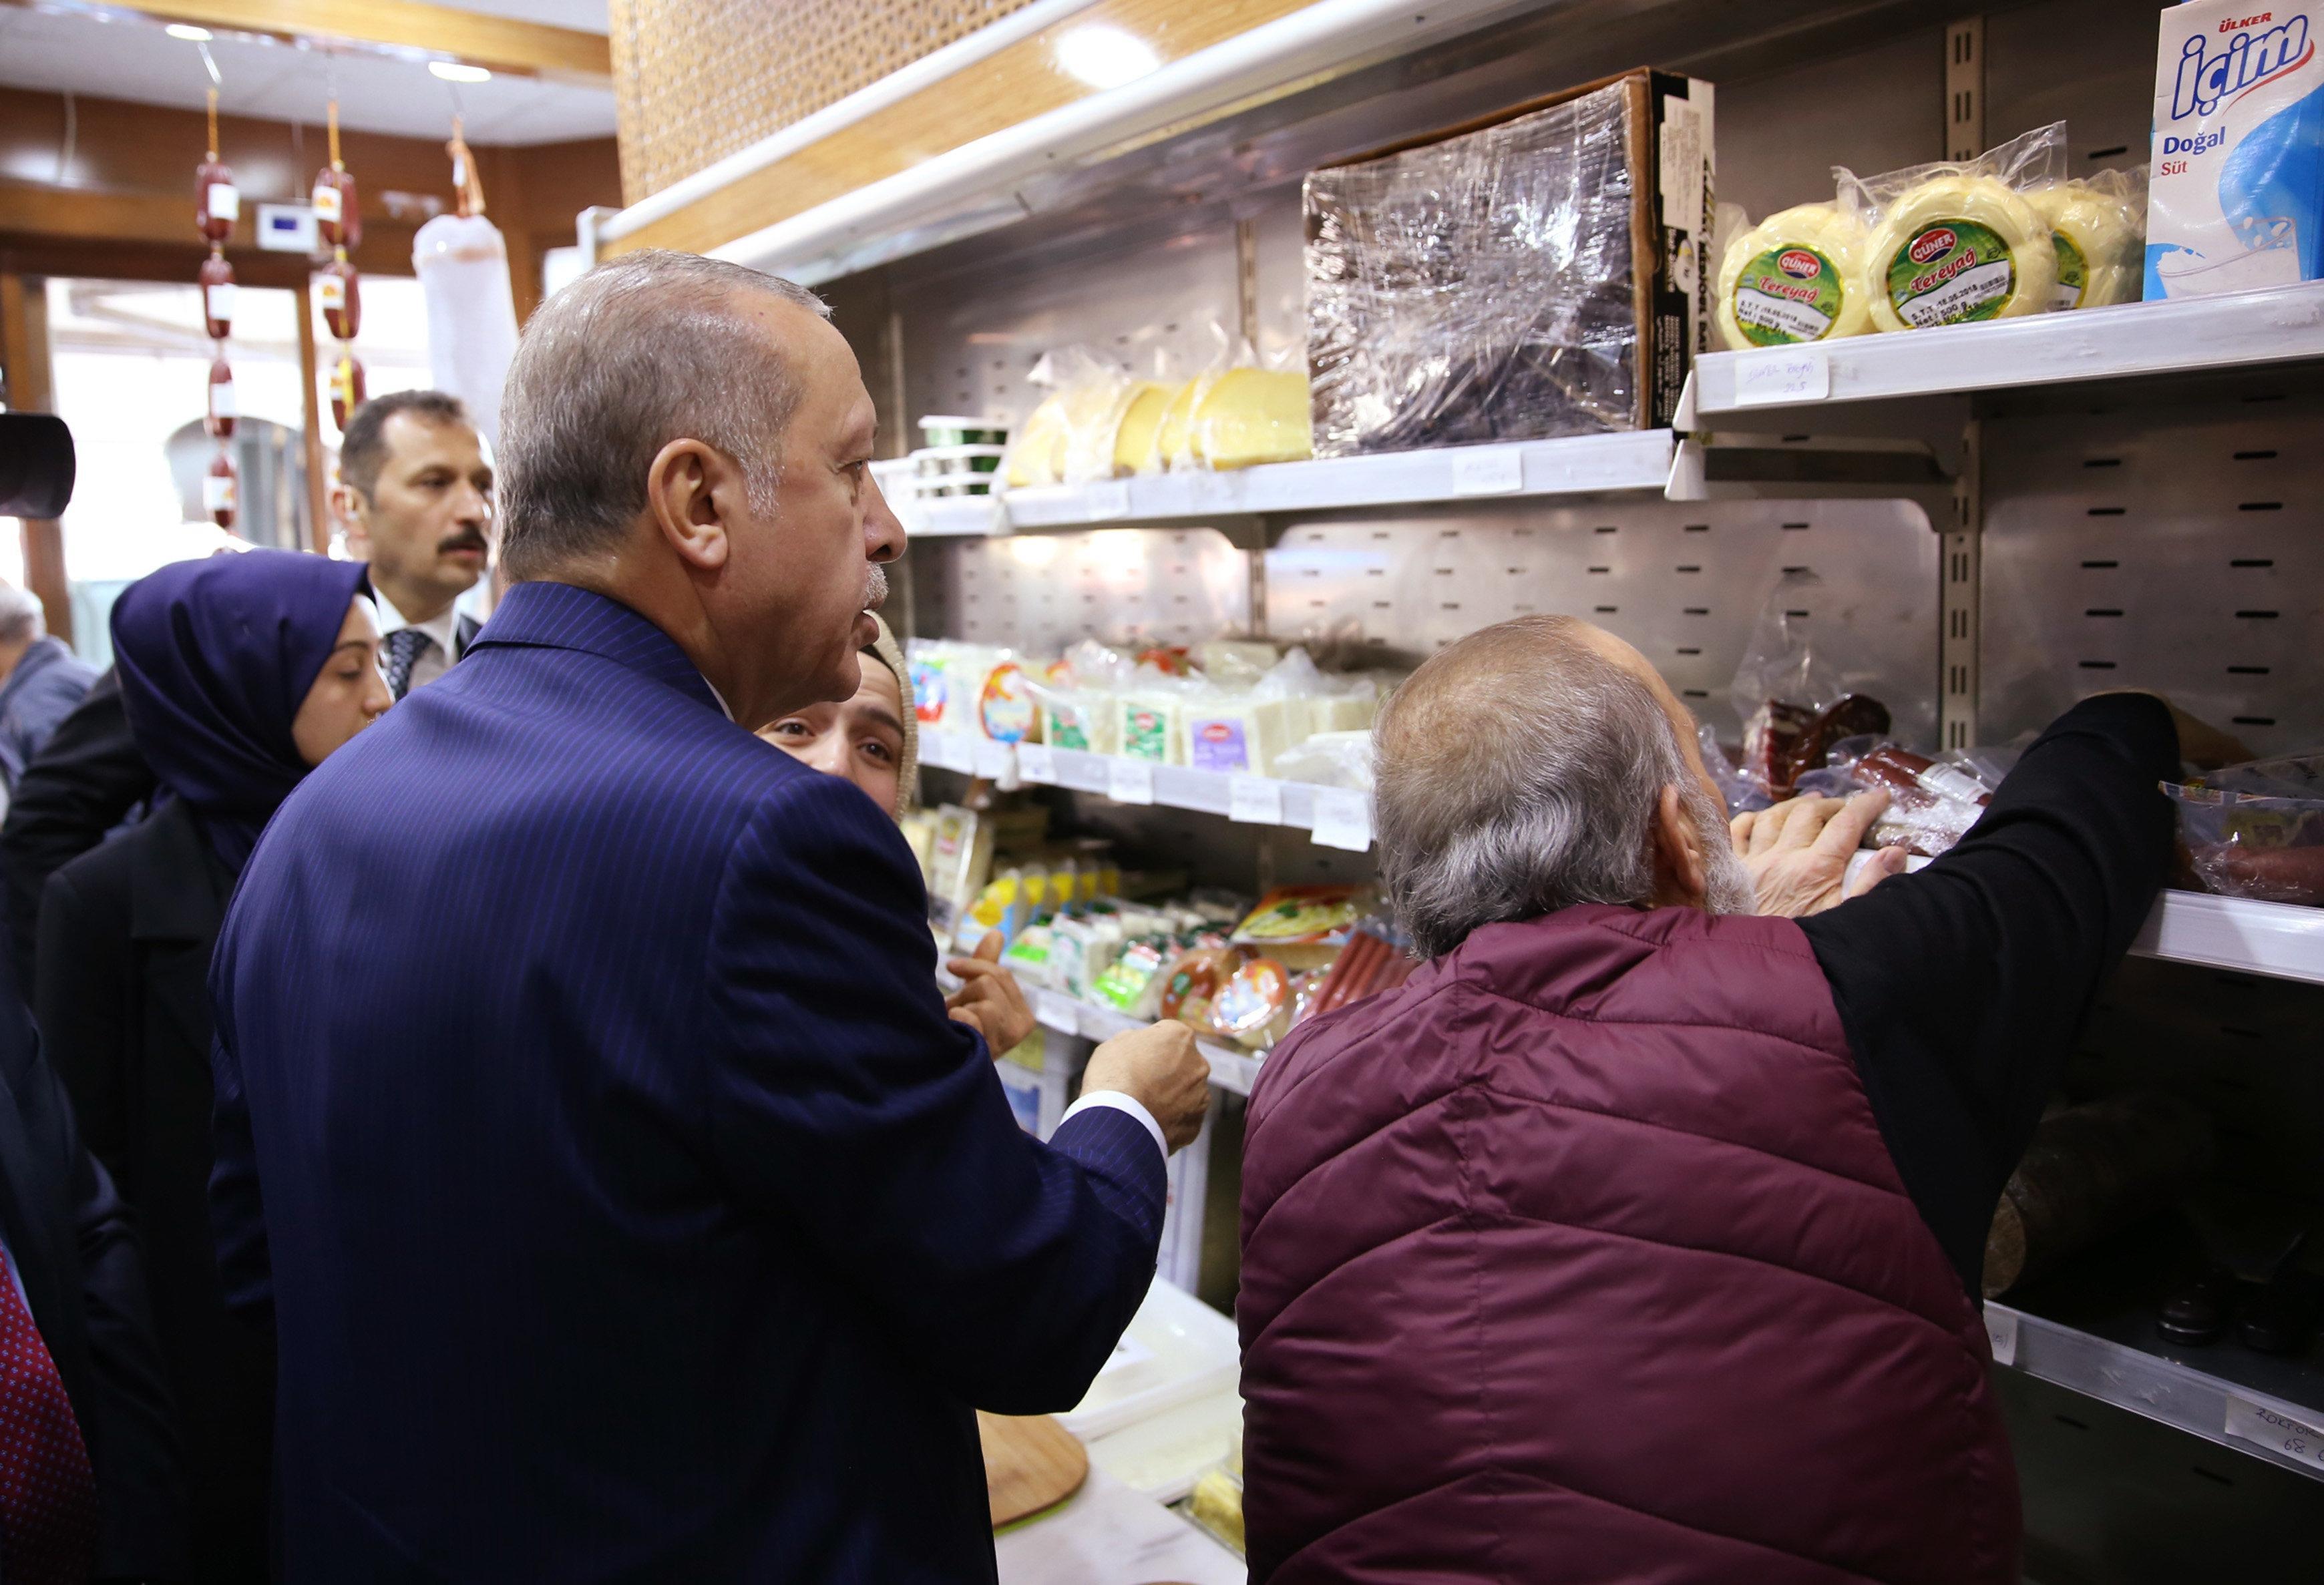 Cumhurbaşkanı Erdoğan şarküteriye girip alışveriş yaptı